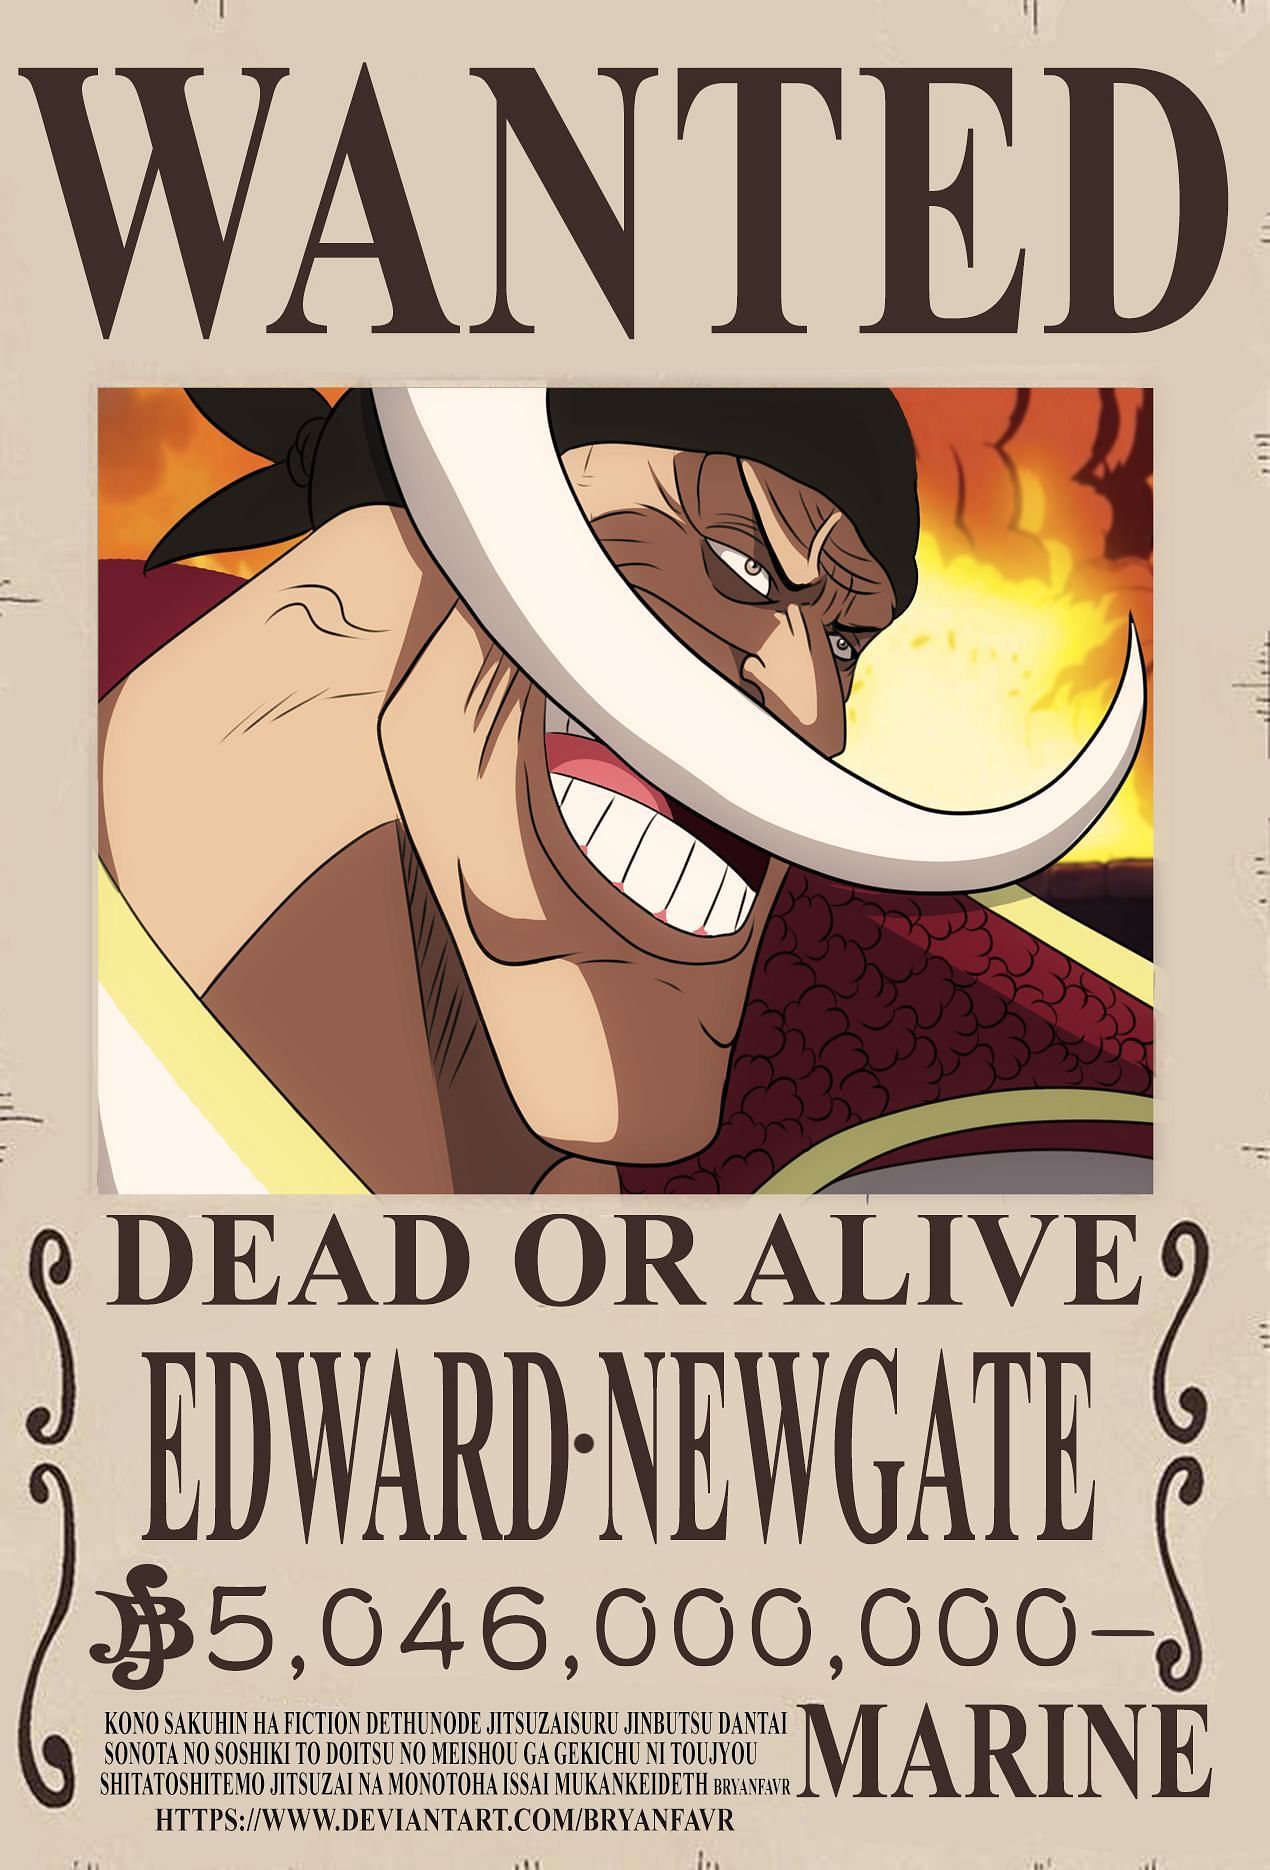 Whitebeard bounty poster (Image via bryanfavr, DeviantArt)